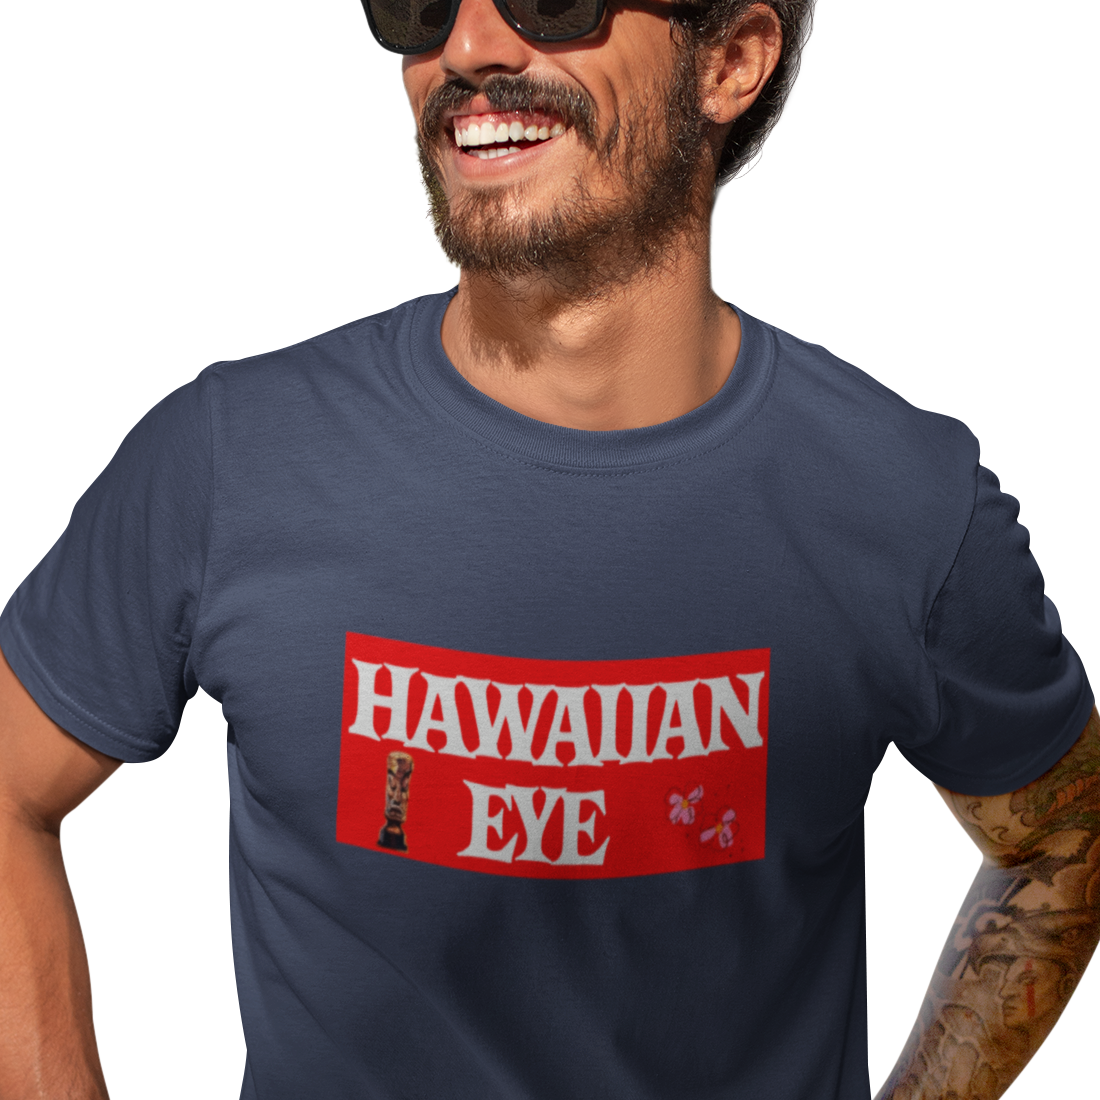 Hawaiian eye t shirt